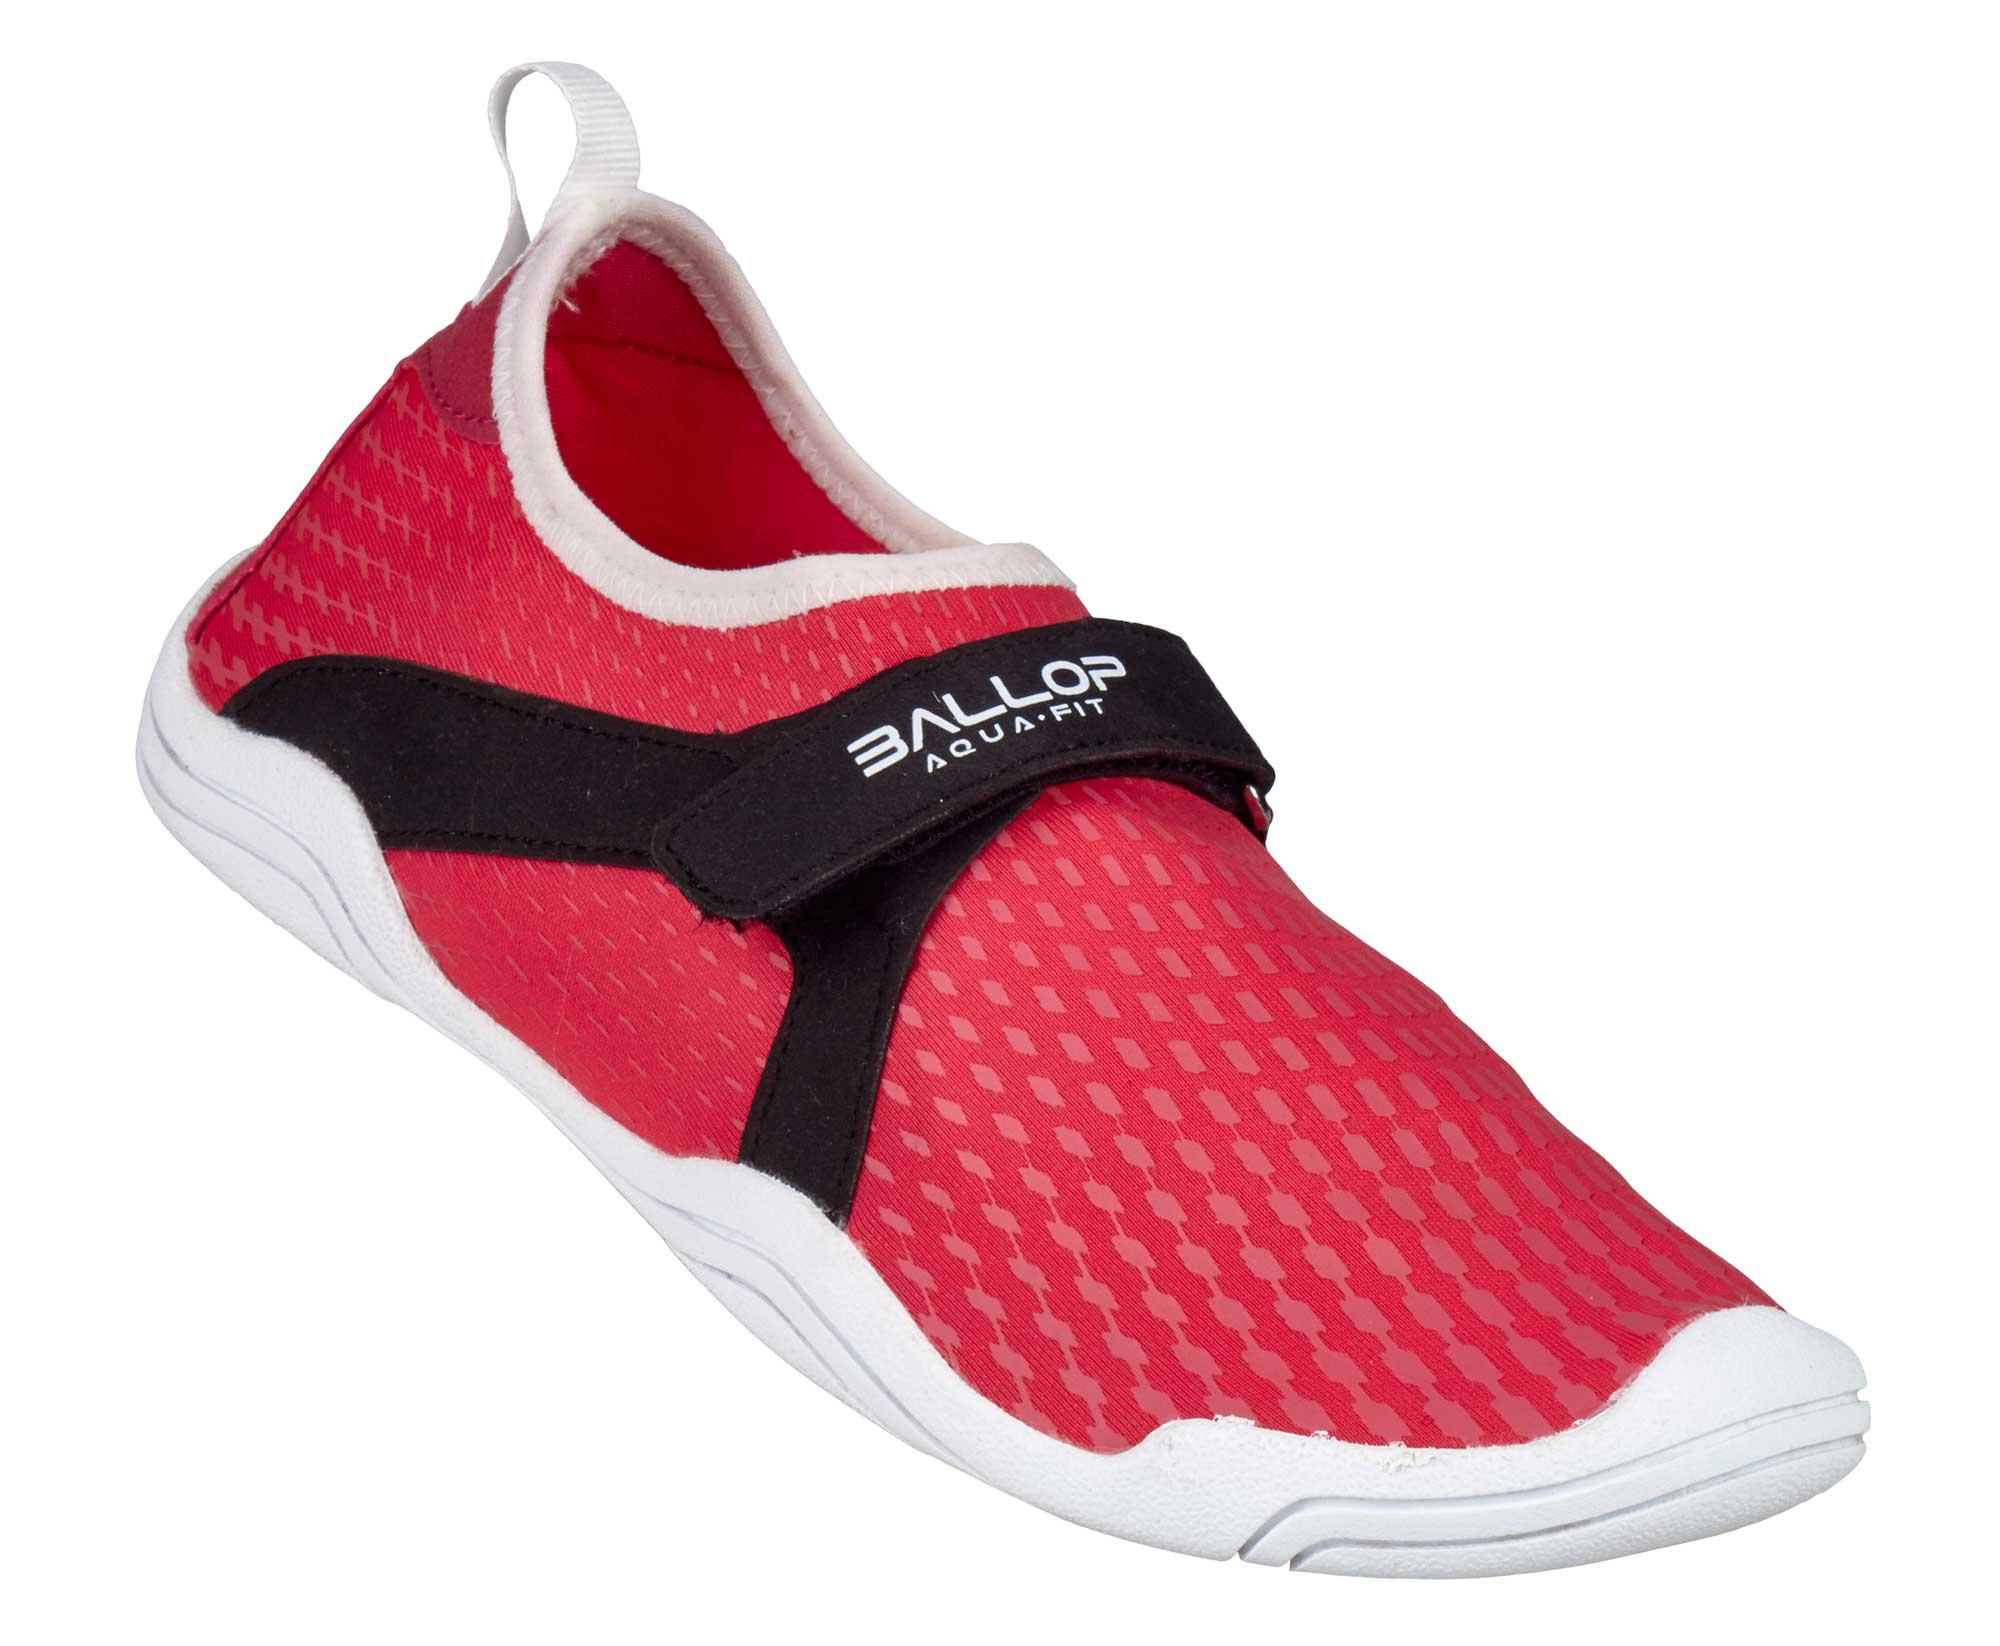 BALLOP- Schuhe "Aqua Fit Typhoon red" Größen: 37,5-47 Barfußschuh Spandex. 